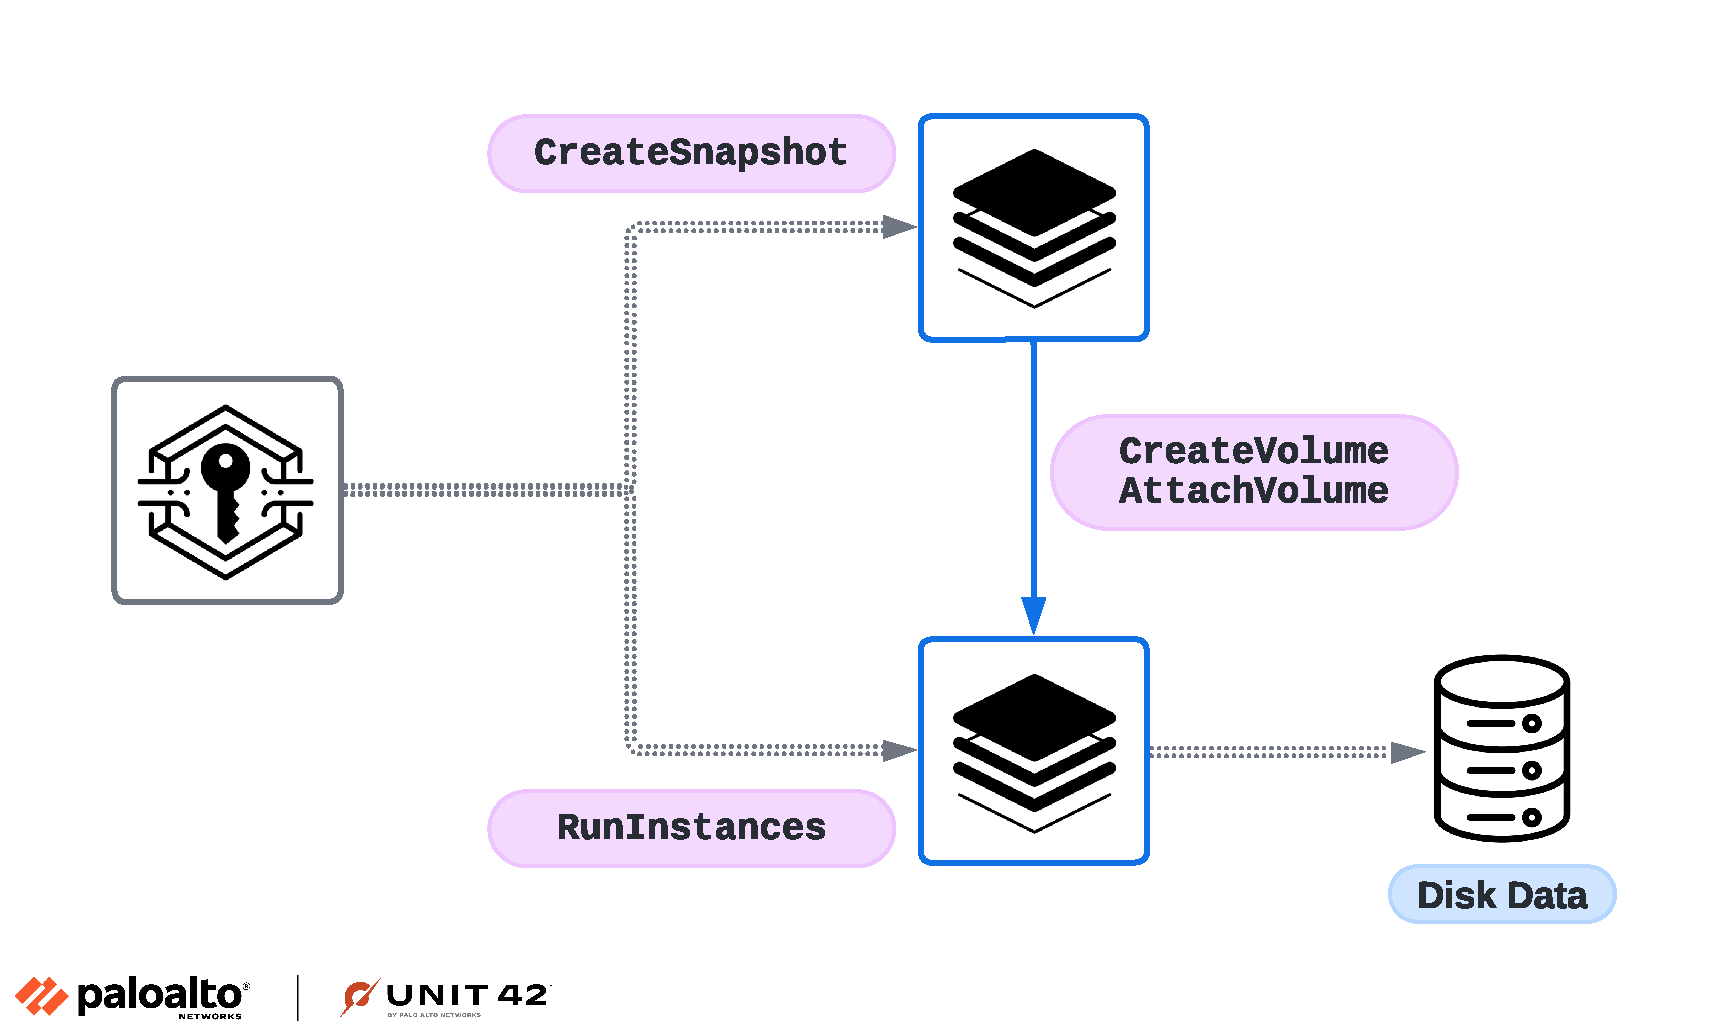 画像 2 は、攻撃者が制御するインスタンスにマウントされた RBS スナップショットのツリー図です。認証情報から伸びる 2 つのブランチは、CreateSnapshot と RunInstances が使われることを示しています。上のサーバーは、下のサーバーに対し、CreateVolume と AttachVolume を実行します。これによりディスク データに至ります。 